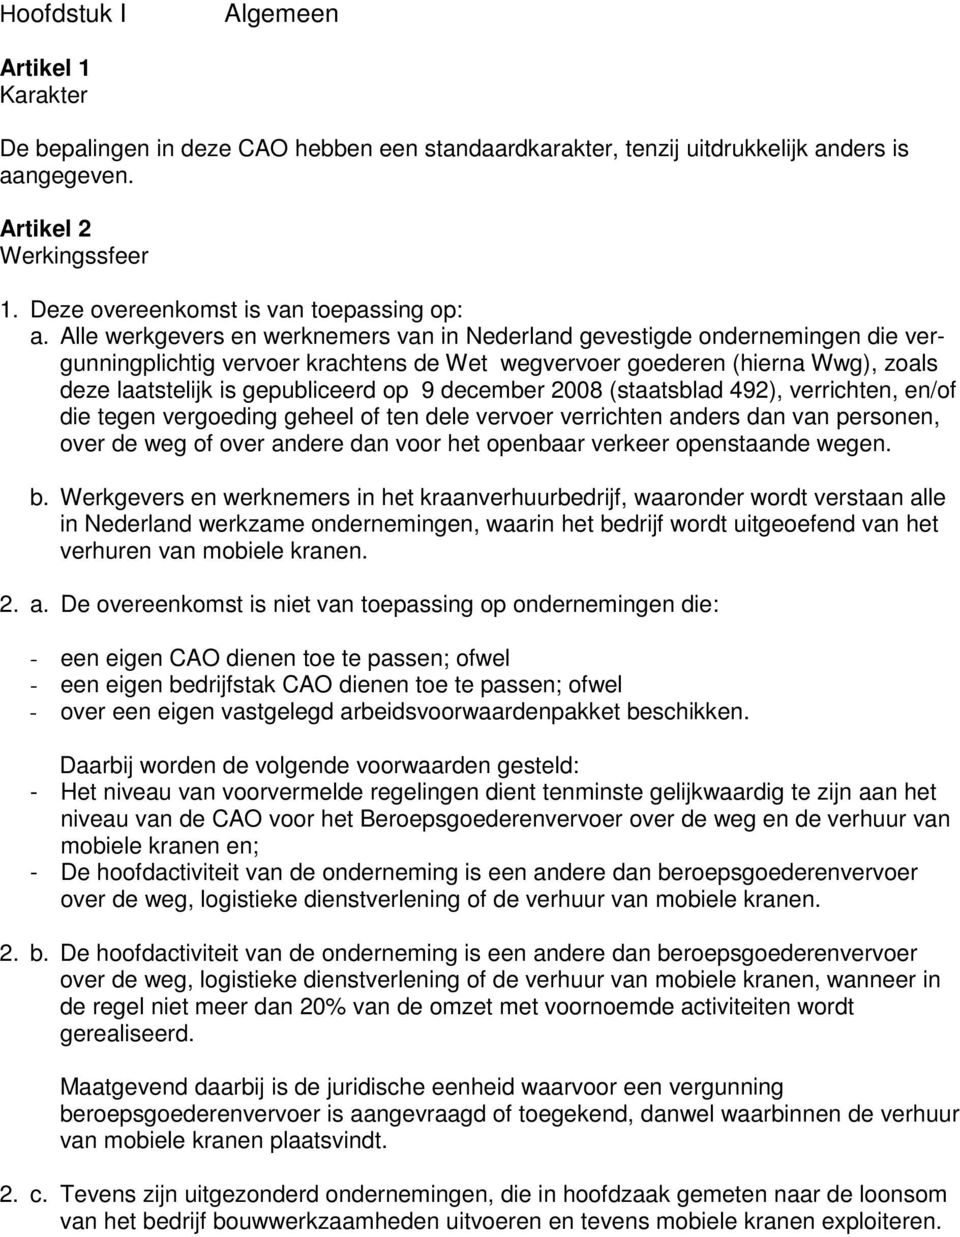 Alle werkgevers en werknemers van in Nederland gevestigde ondernemingen die vergunningplichtig vervoer krachtens de Wet wegvervoer goederen (hierna Wwg), zoals deze laatstelijk is gepubliceerd op 9